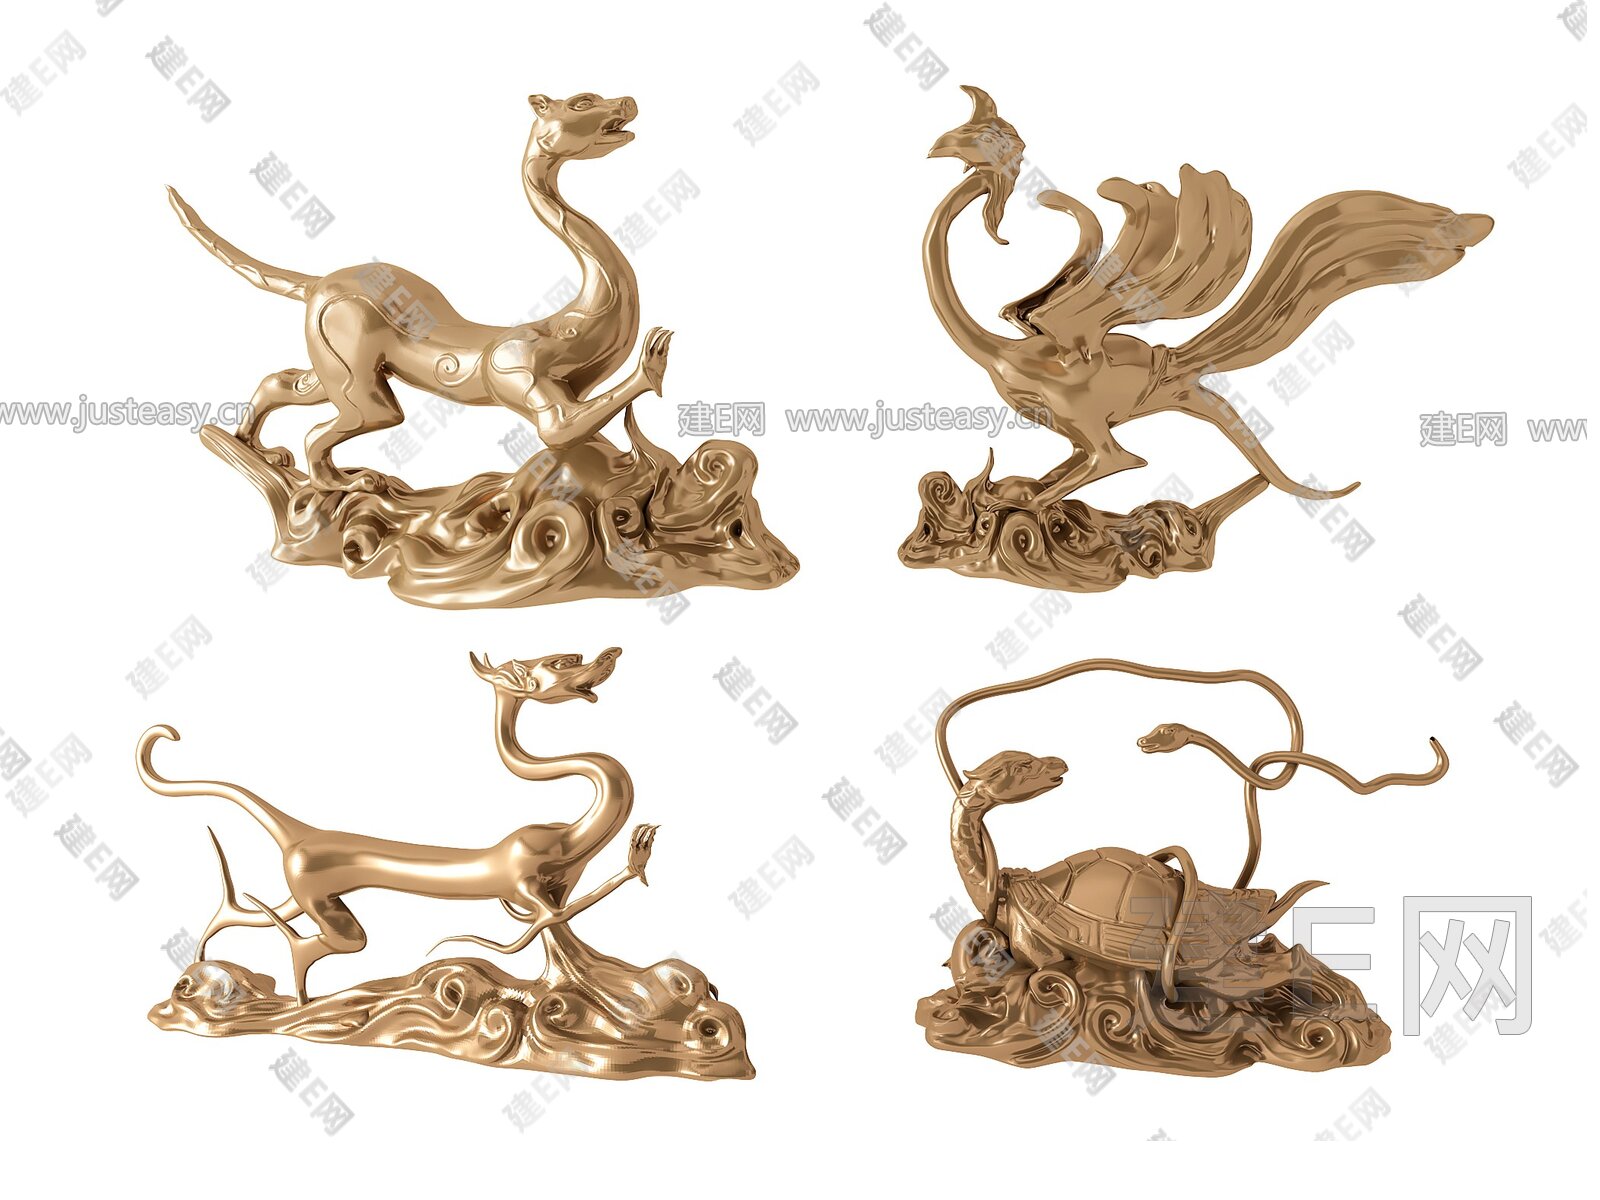 中式雕塑四大神兽